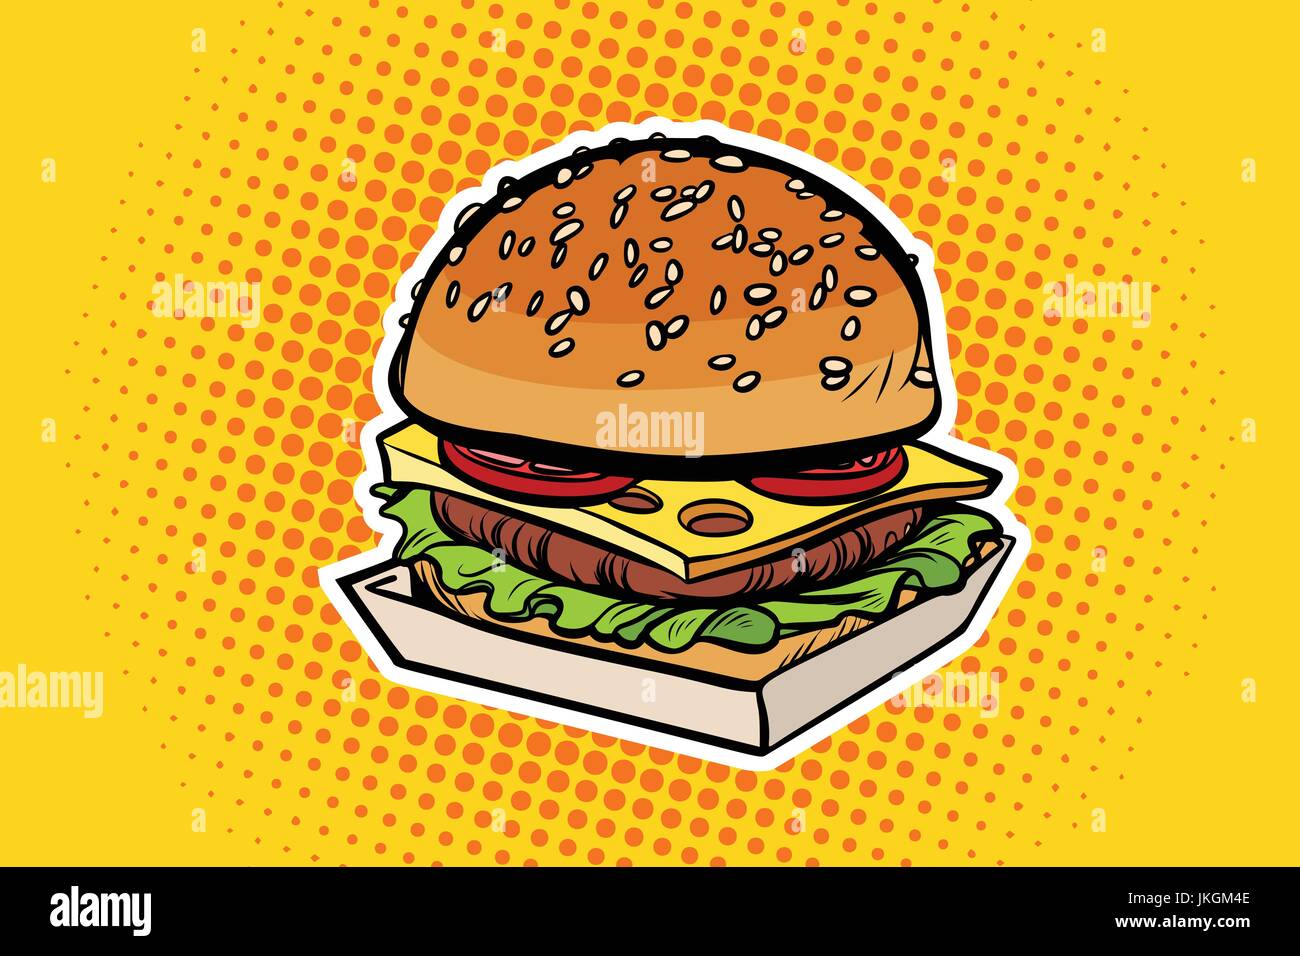 Burger pop art illustration Stock Vector